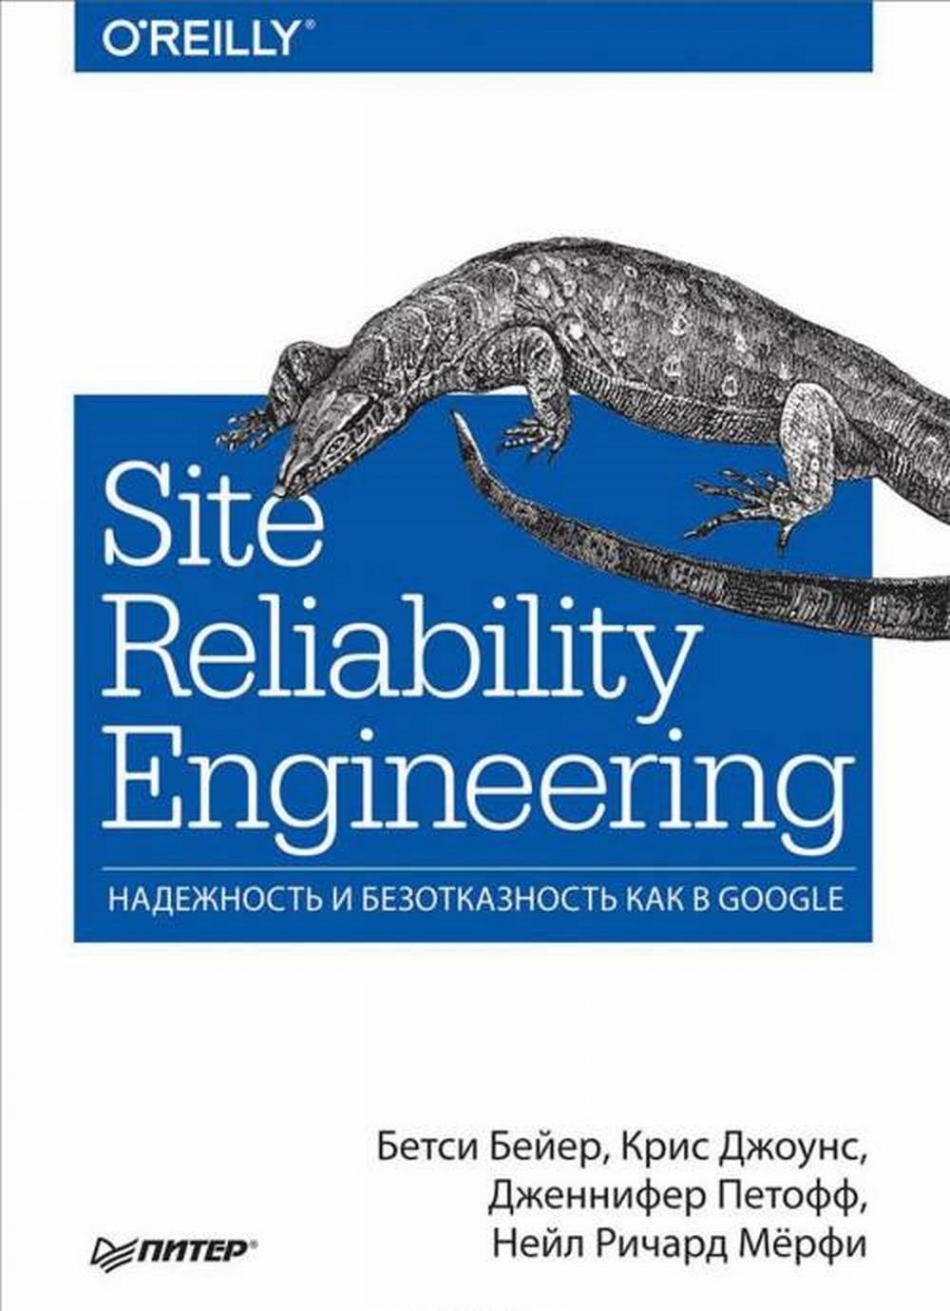 Джоунс К., Бейер  Б., Петофф  Д., Мёрфи Н. Site Reliability Engineering. Надежность и безотказность как в Google 